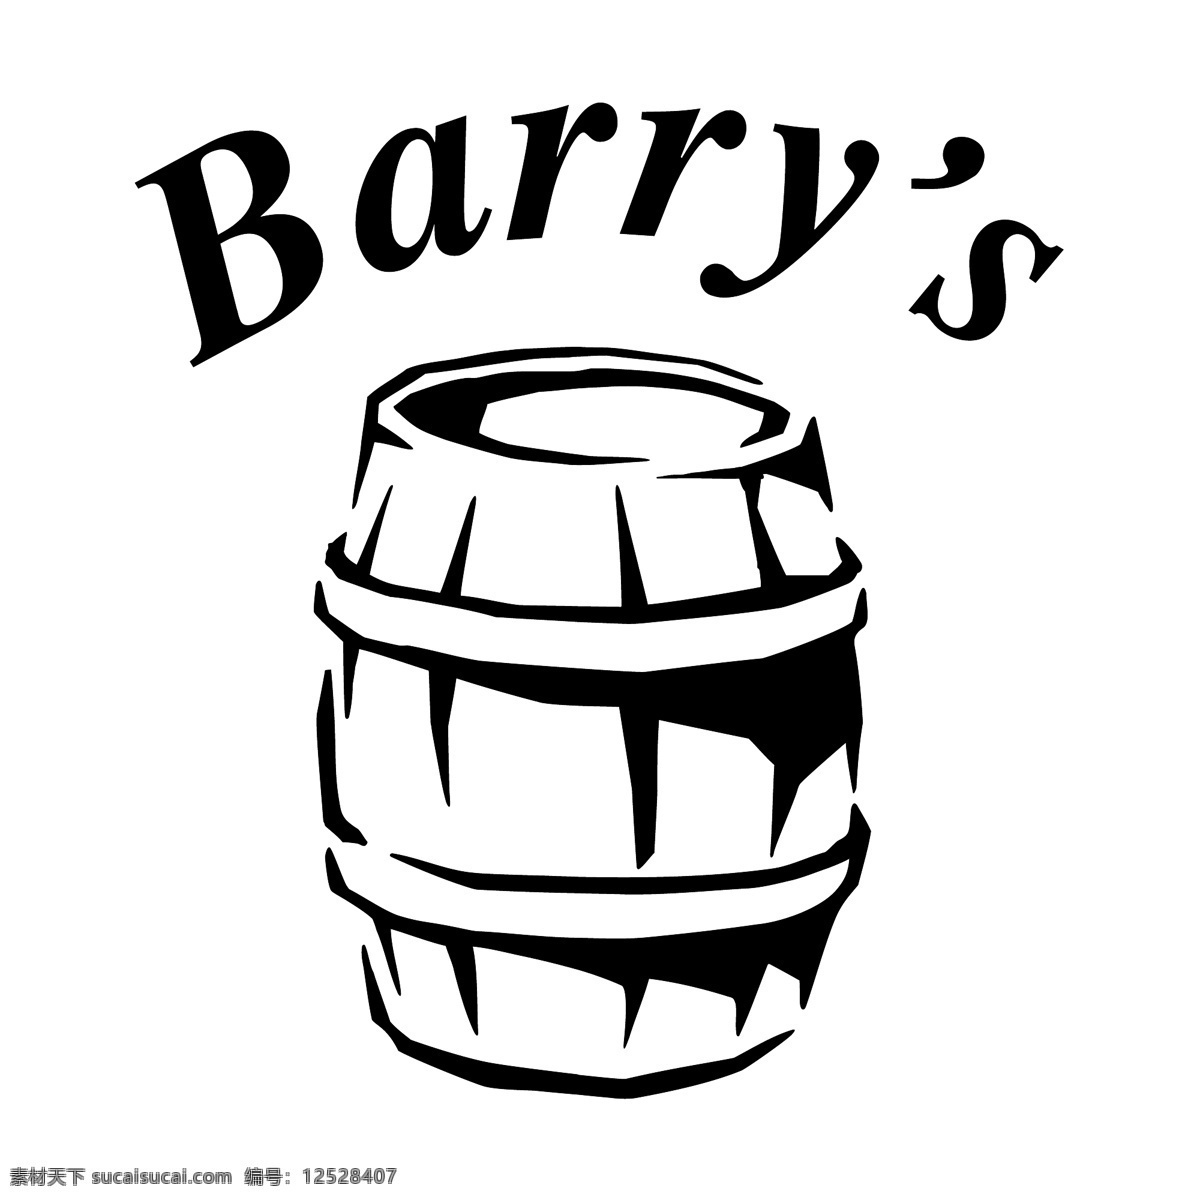 巴里 酒吧 标识 公司 免费 品牌 品牌标识 商标 矢量标志下载 免费矢量标识 矢量 psd源文件 logo设计